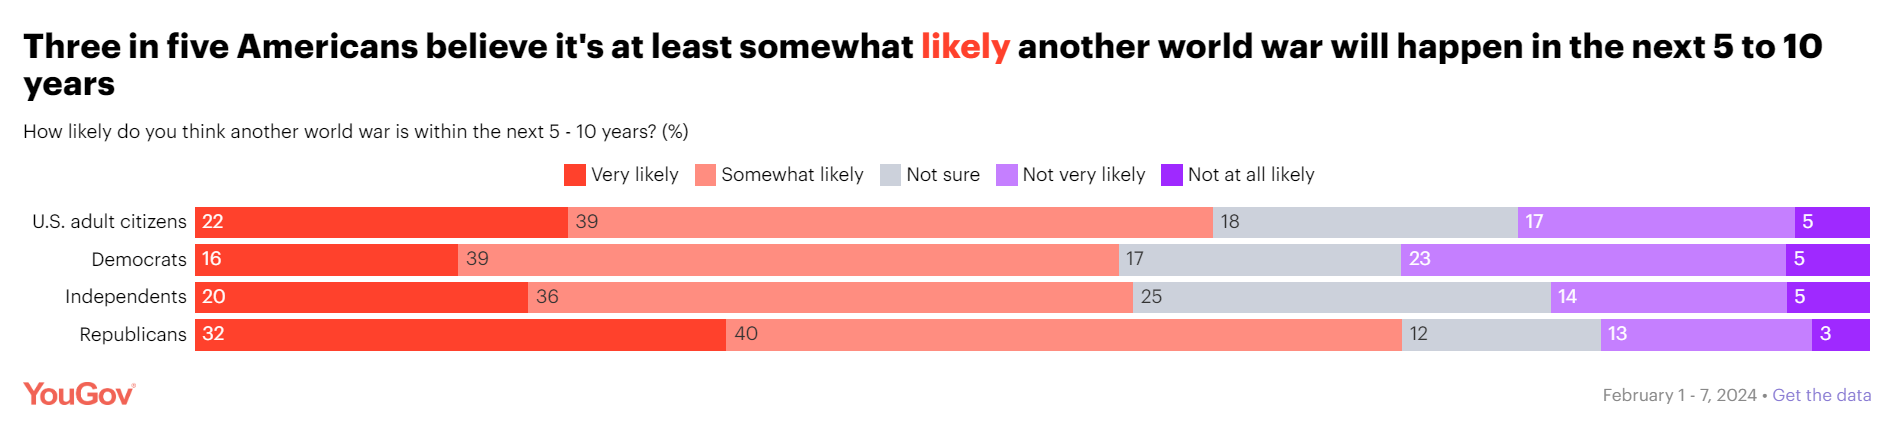 Більшість американців вірять у можливість Третьої світової війни: опитування показало, кого у США вважають союзниками